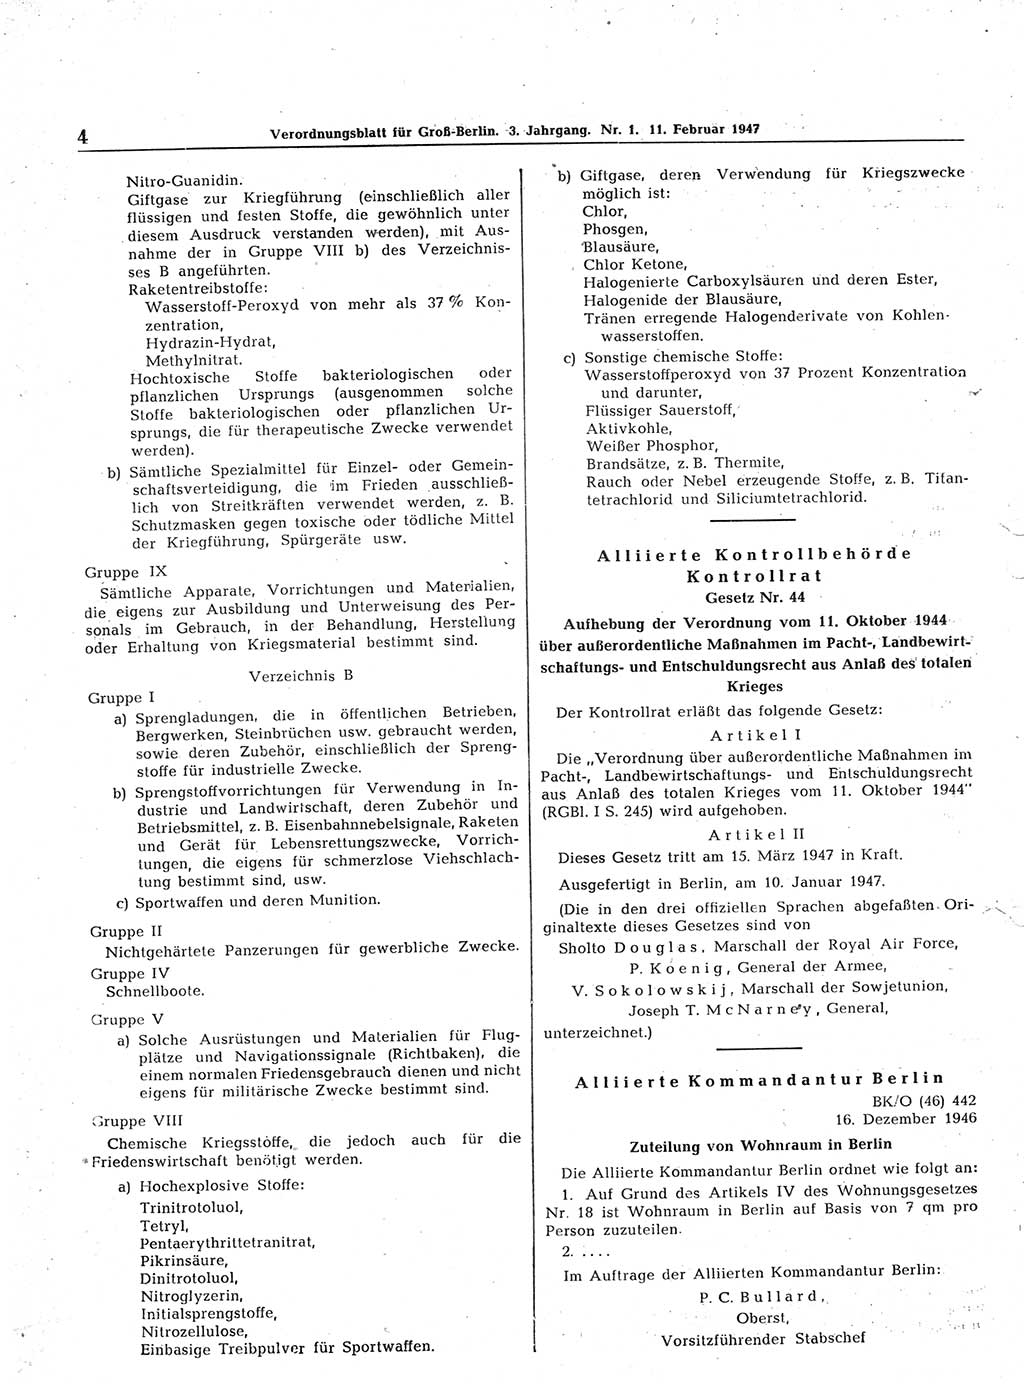 Verordnungsblatt (VOBl.) für Groß-Berlin 1947, Seite 4 (VOBl. Bln. 1947, S. 4)